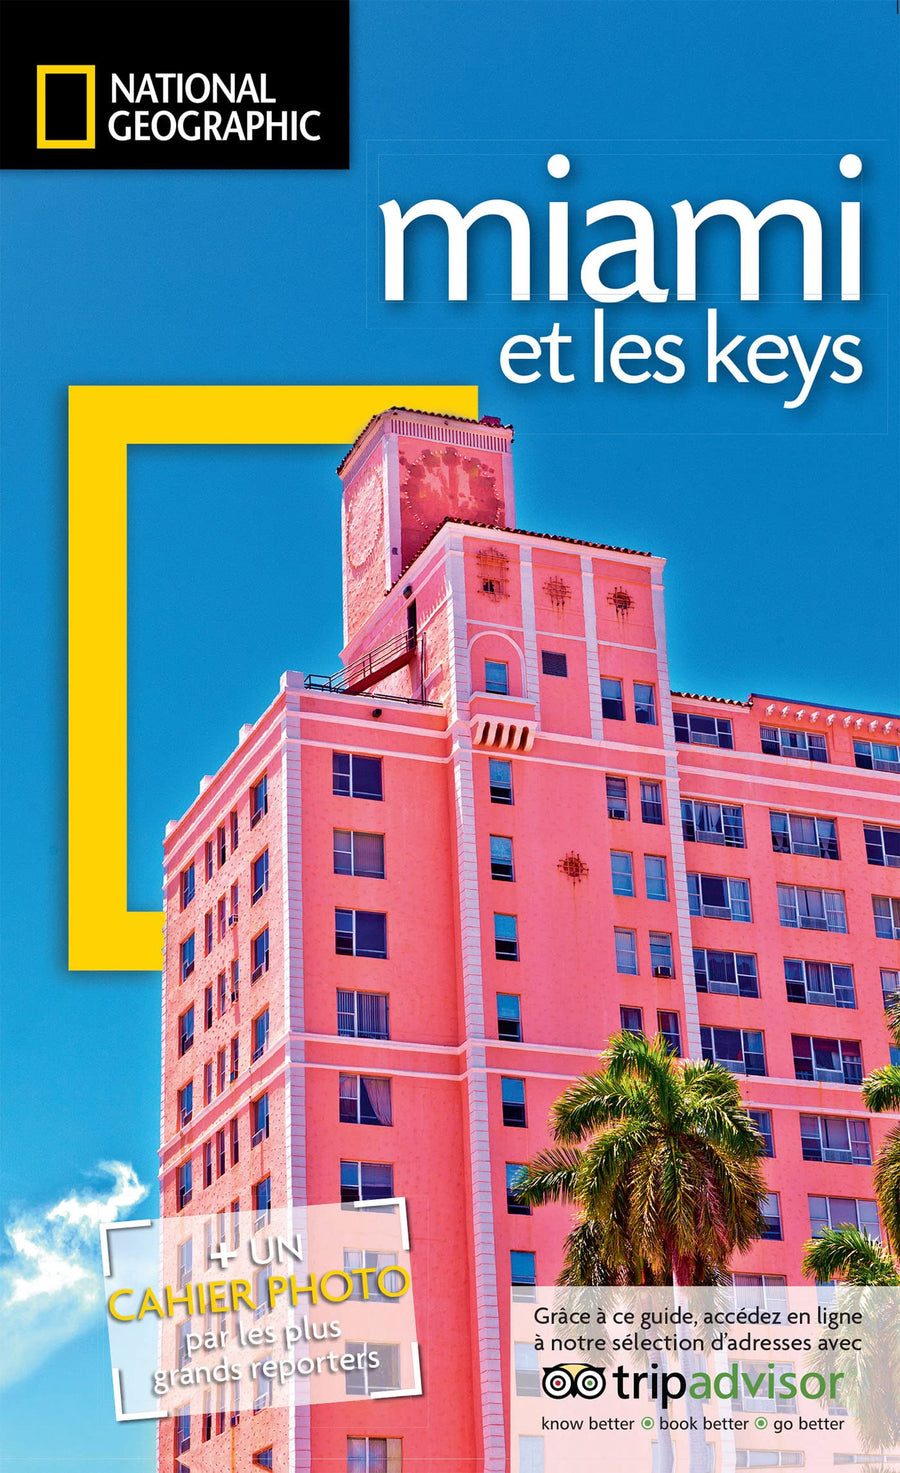 Guide de voyage de poche - Miami & les Keys - Édition 2022 | National Geographic guide de voyage National Geographic 